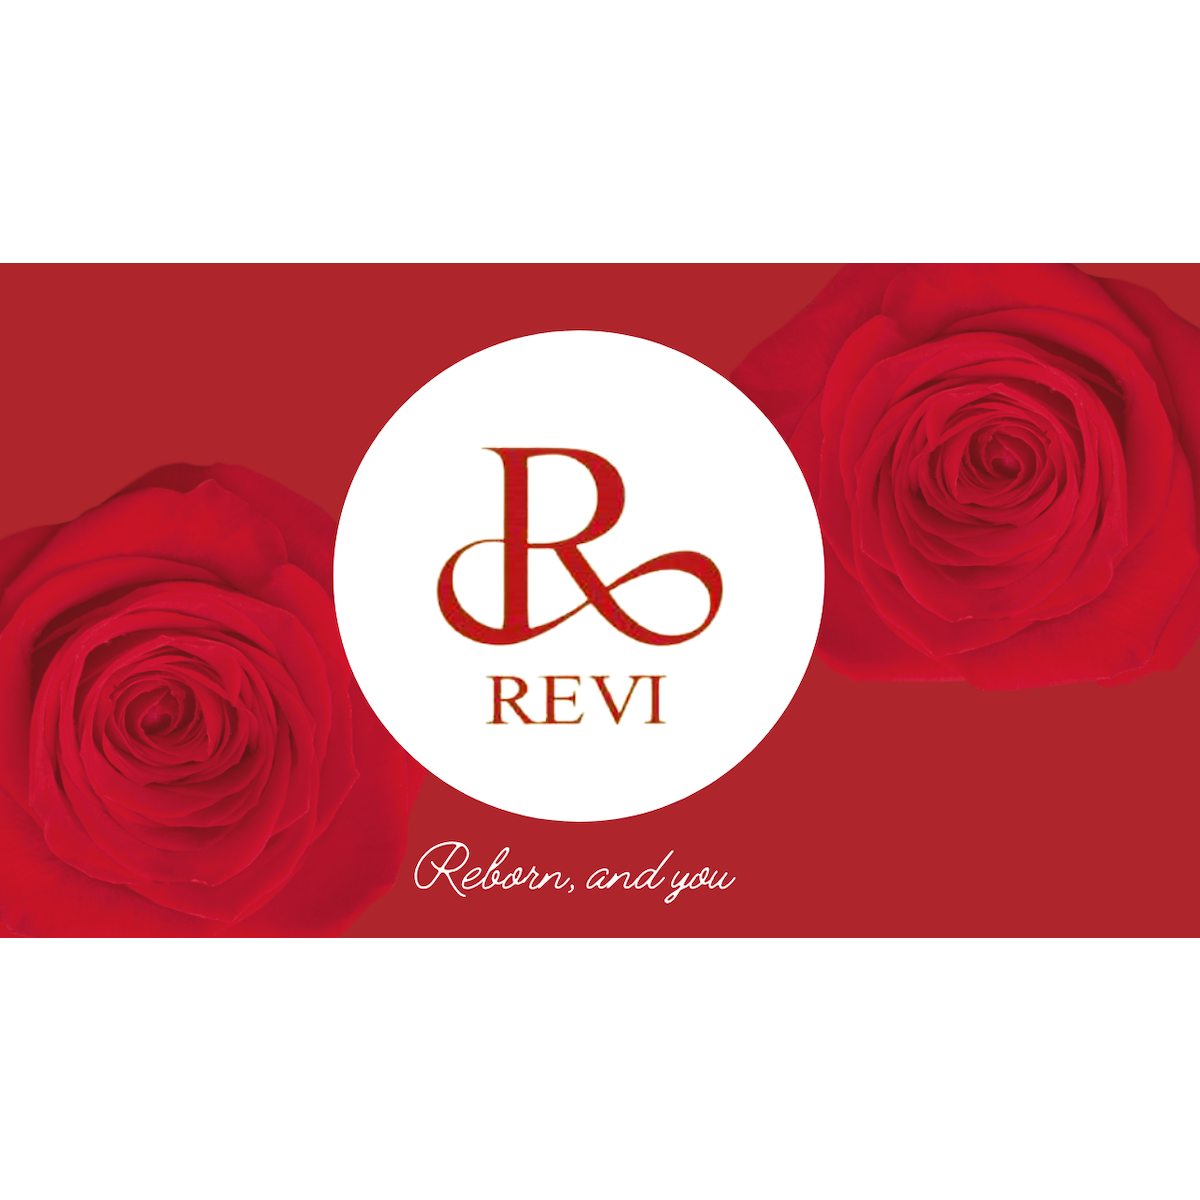 REVI ルヴィ 公式ショッピングサイト